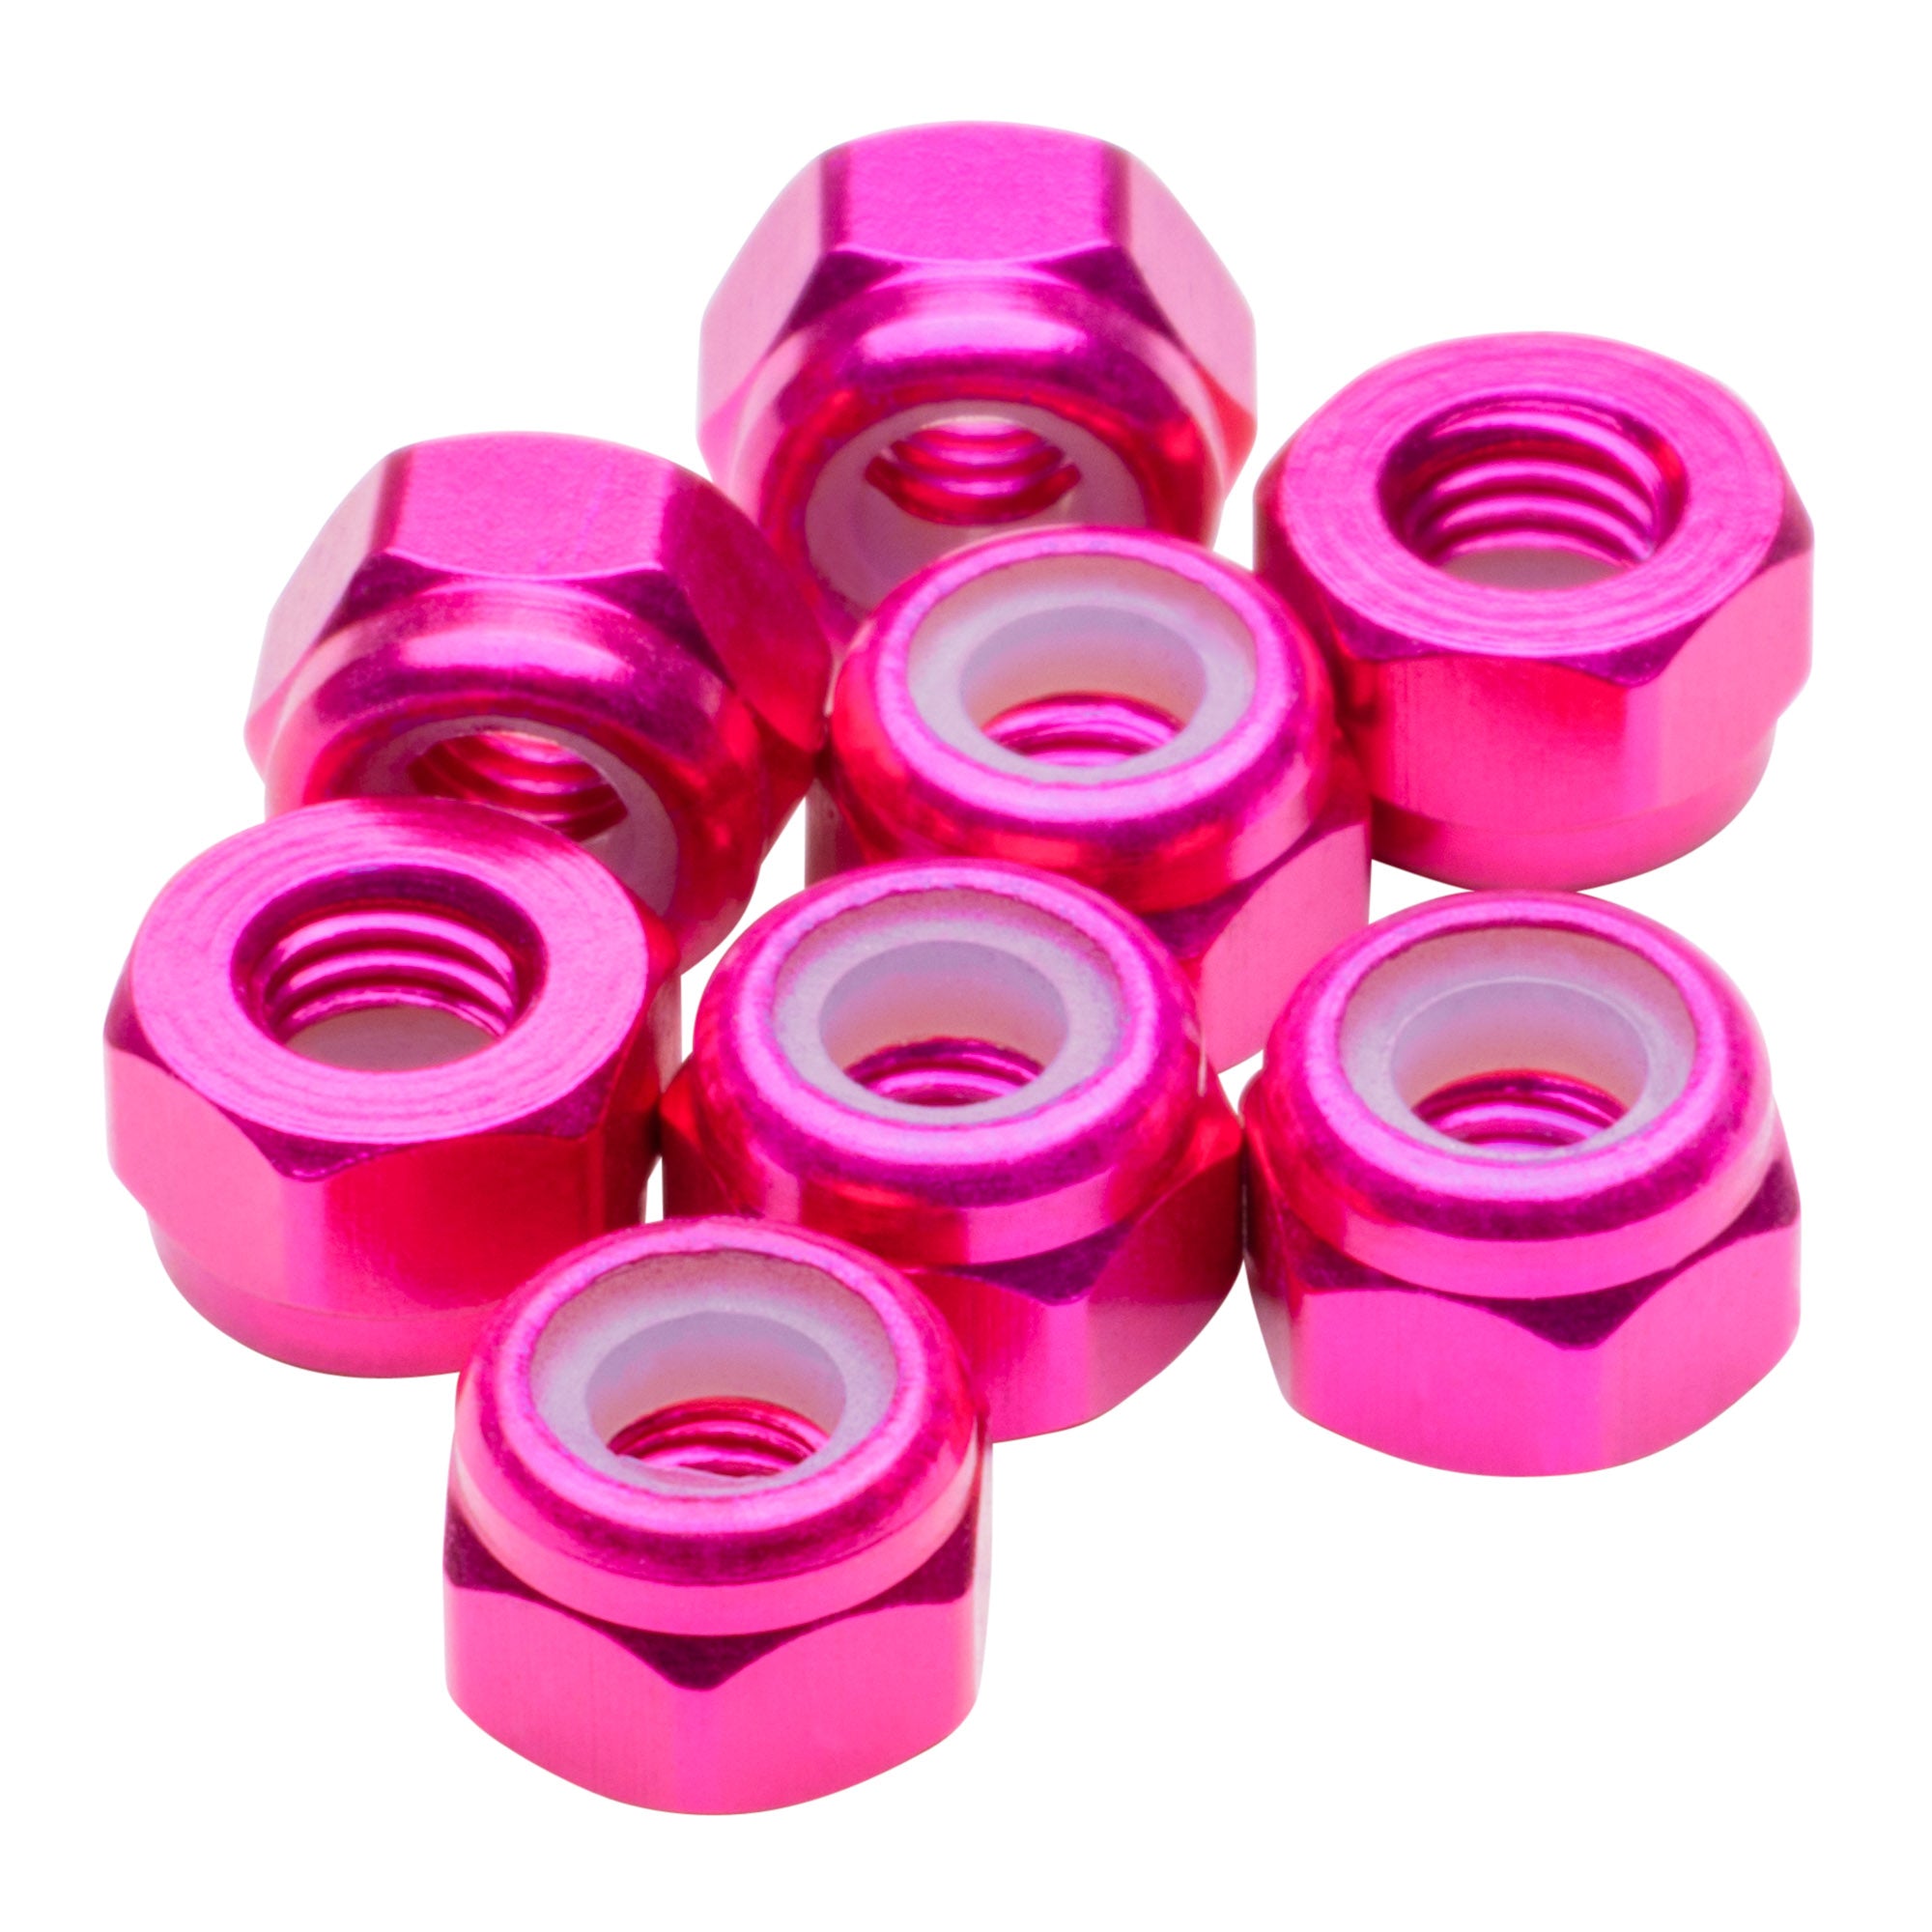 Hot Pink Anodized Premium Aluminum Hardware